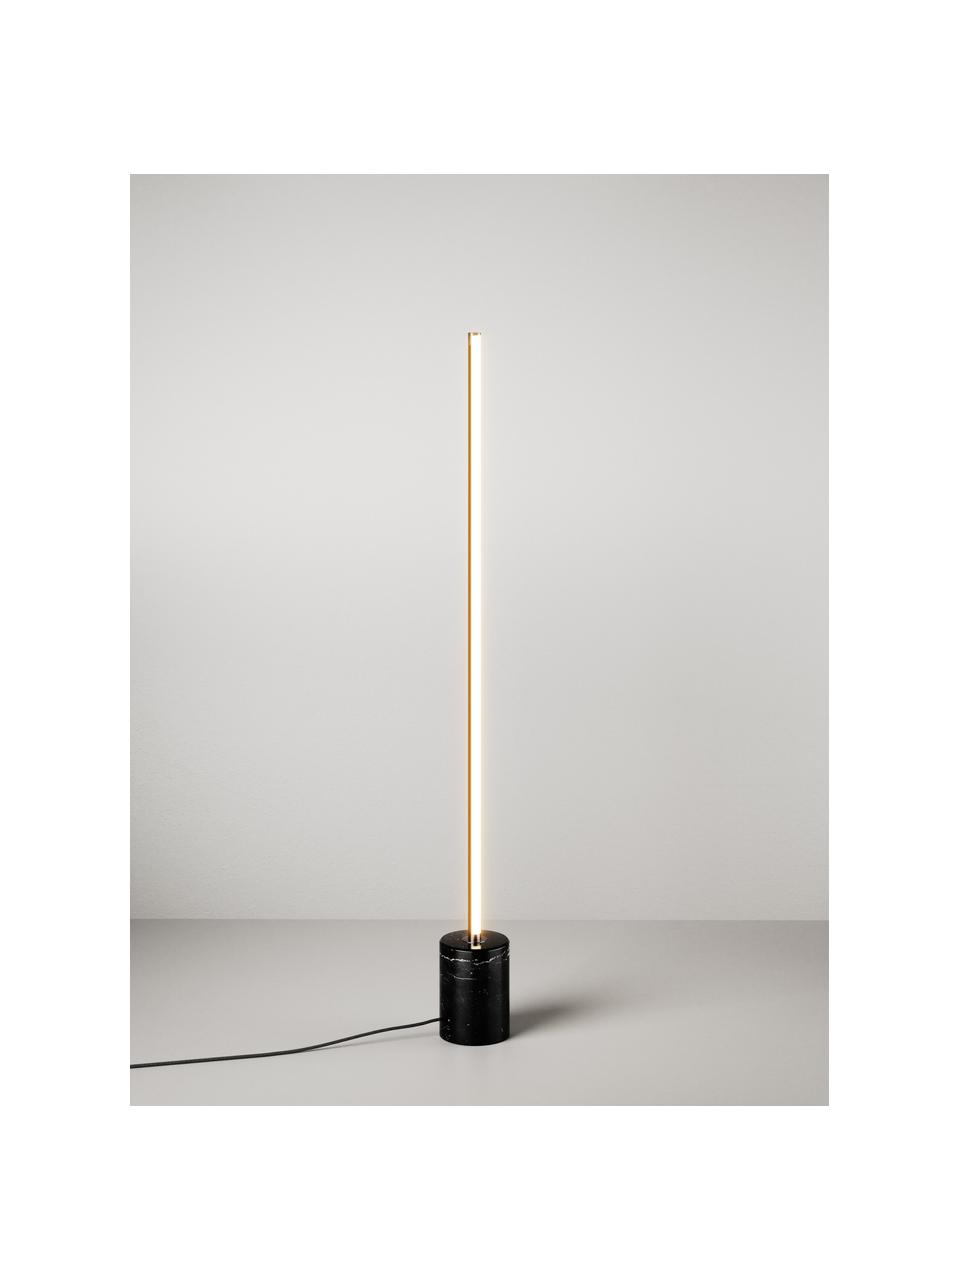 Stojacia LED lampa Shelby, Mramorovaná čierna, V 111 cm